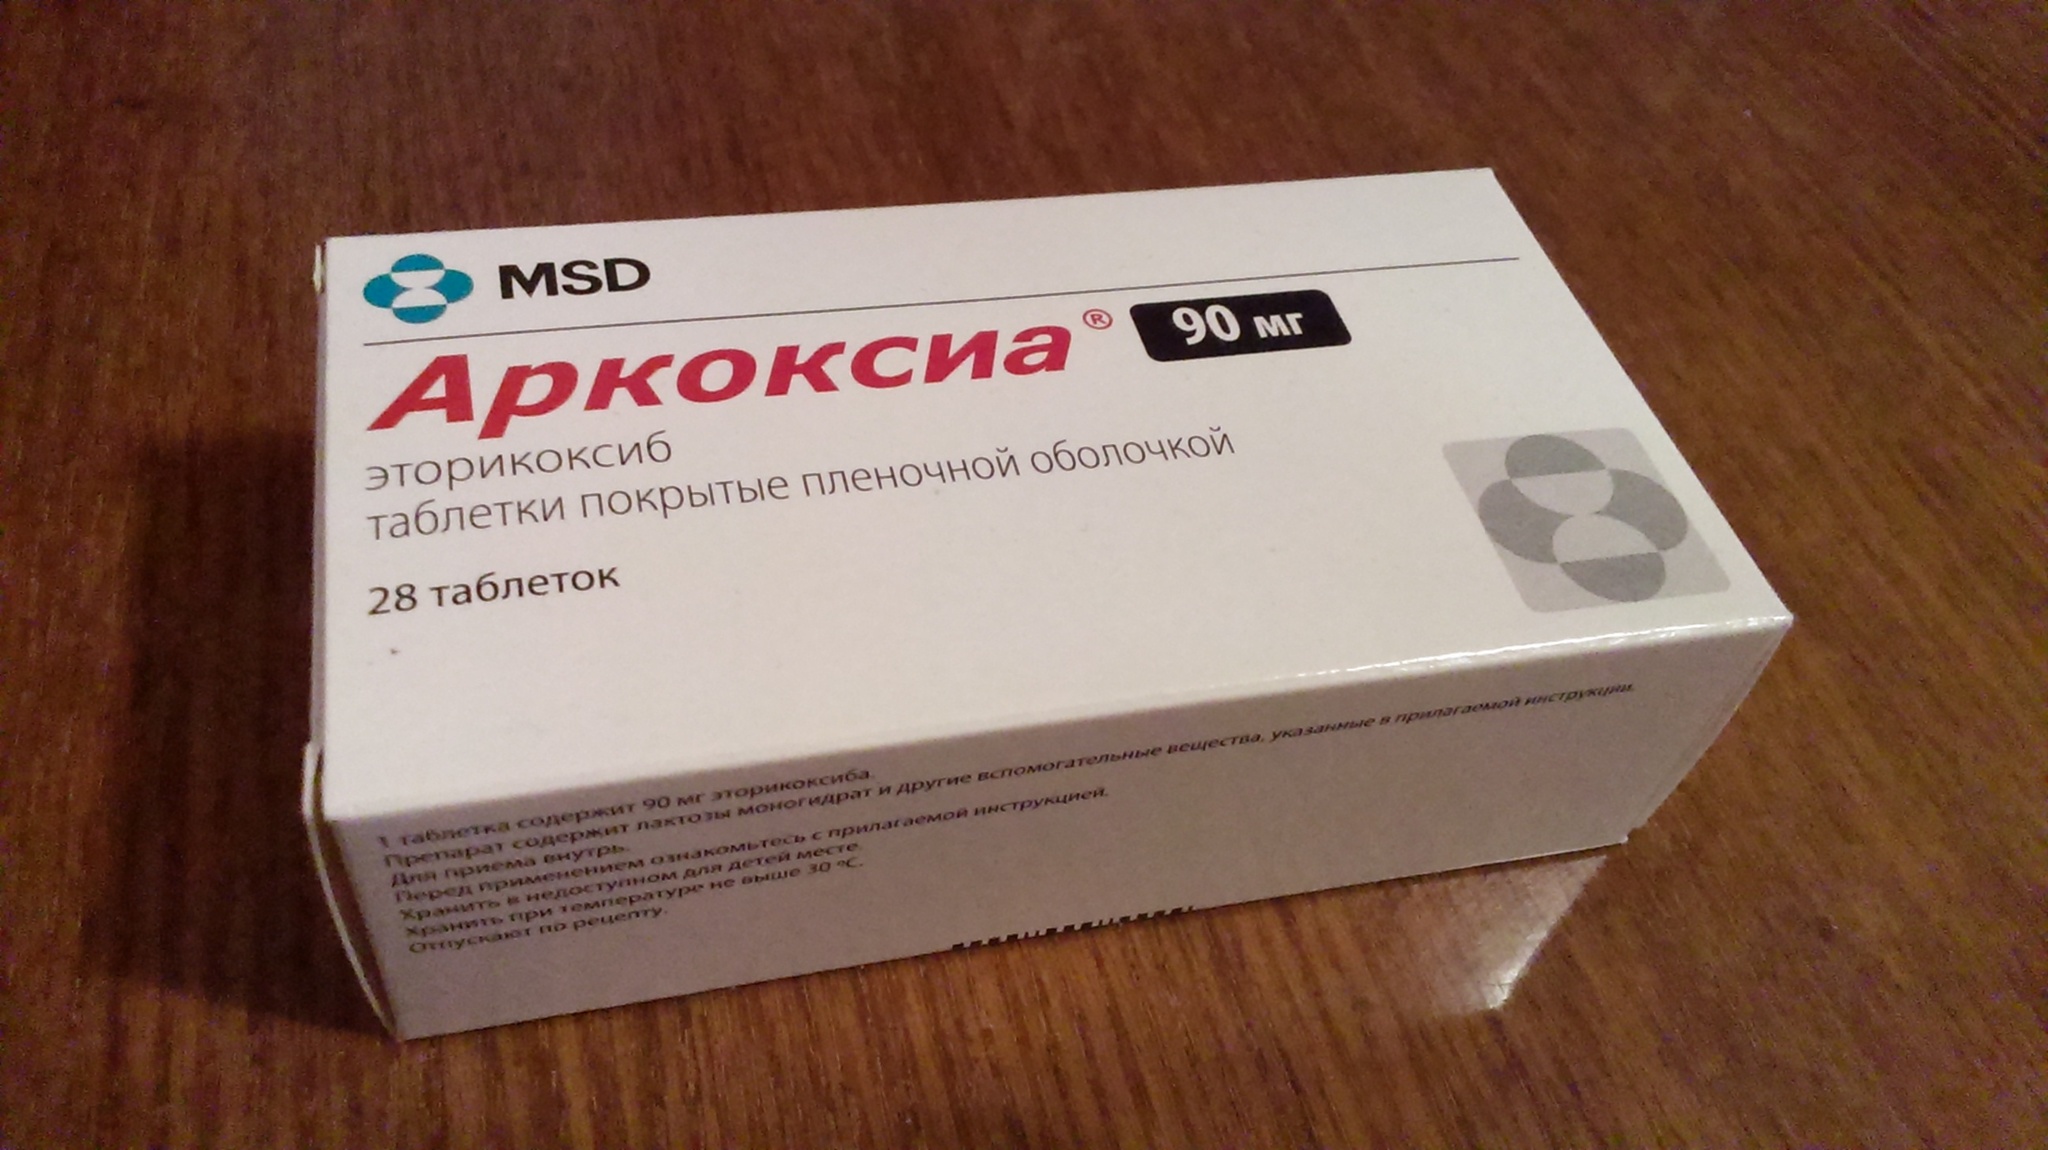 Аркоксиа 90 мг: инструкция по применению таблеток, состав, аналоги .